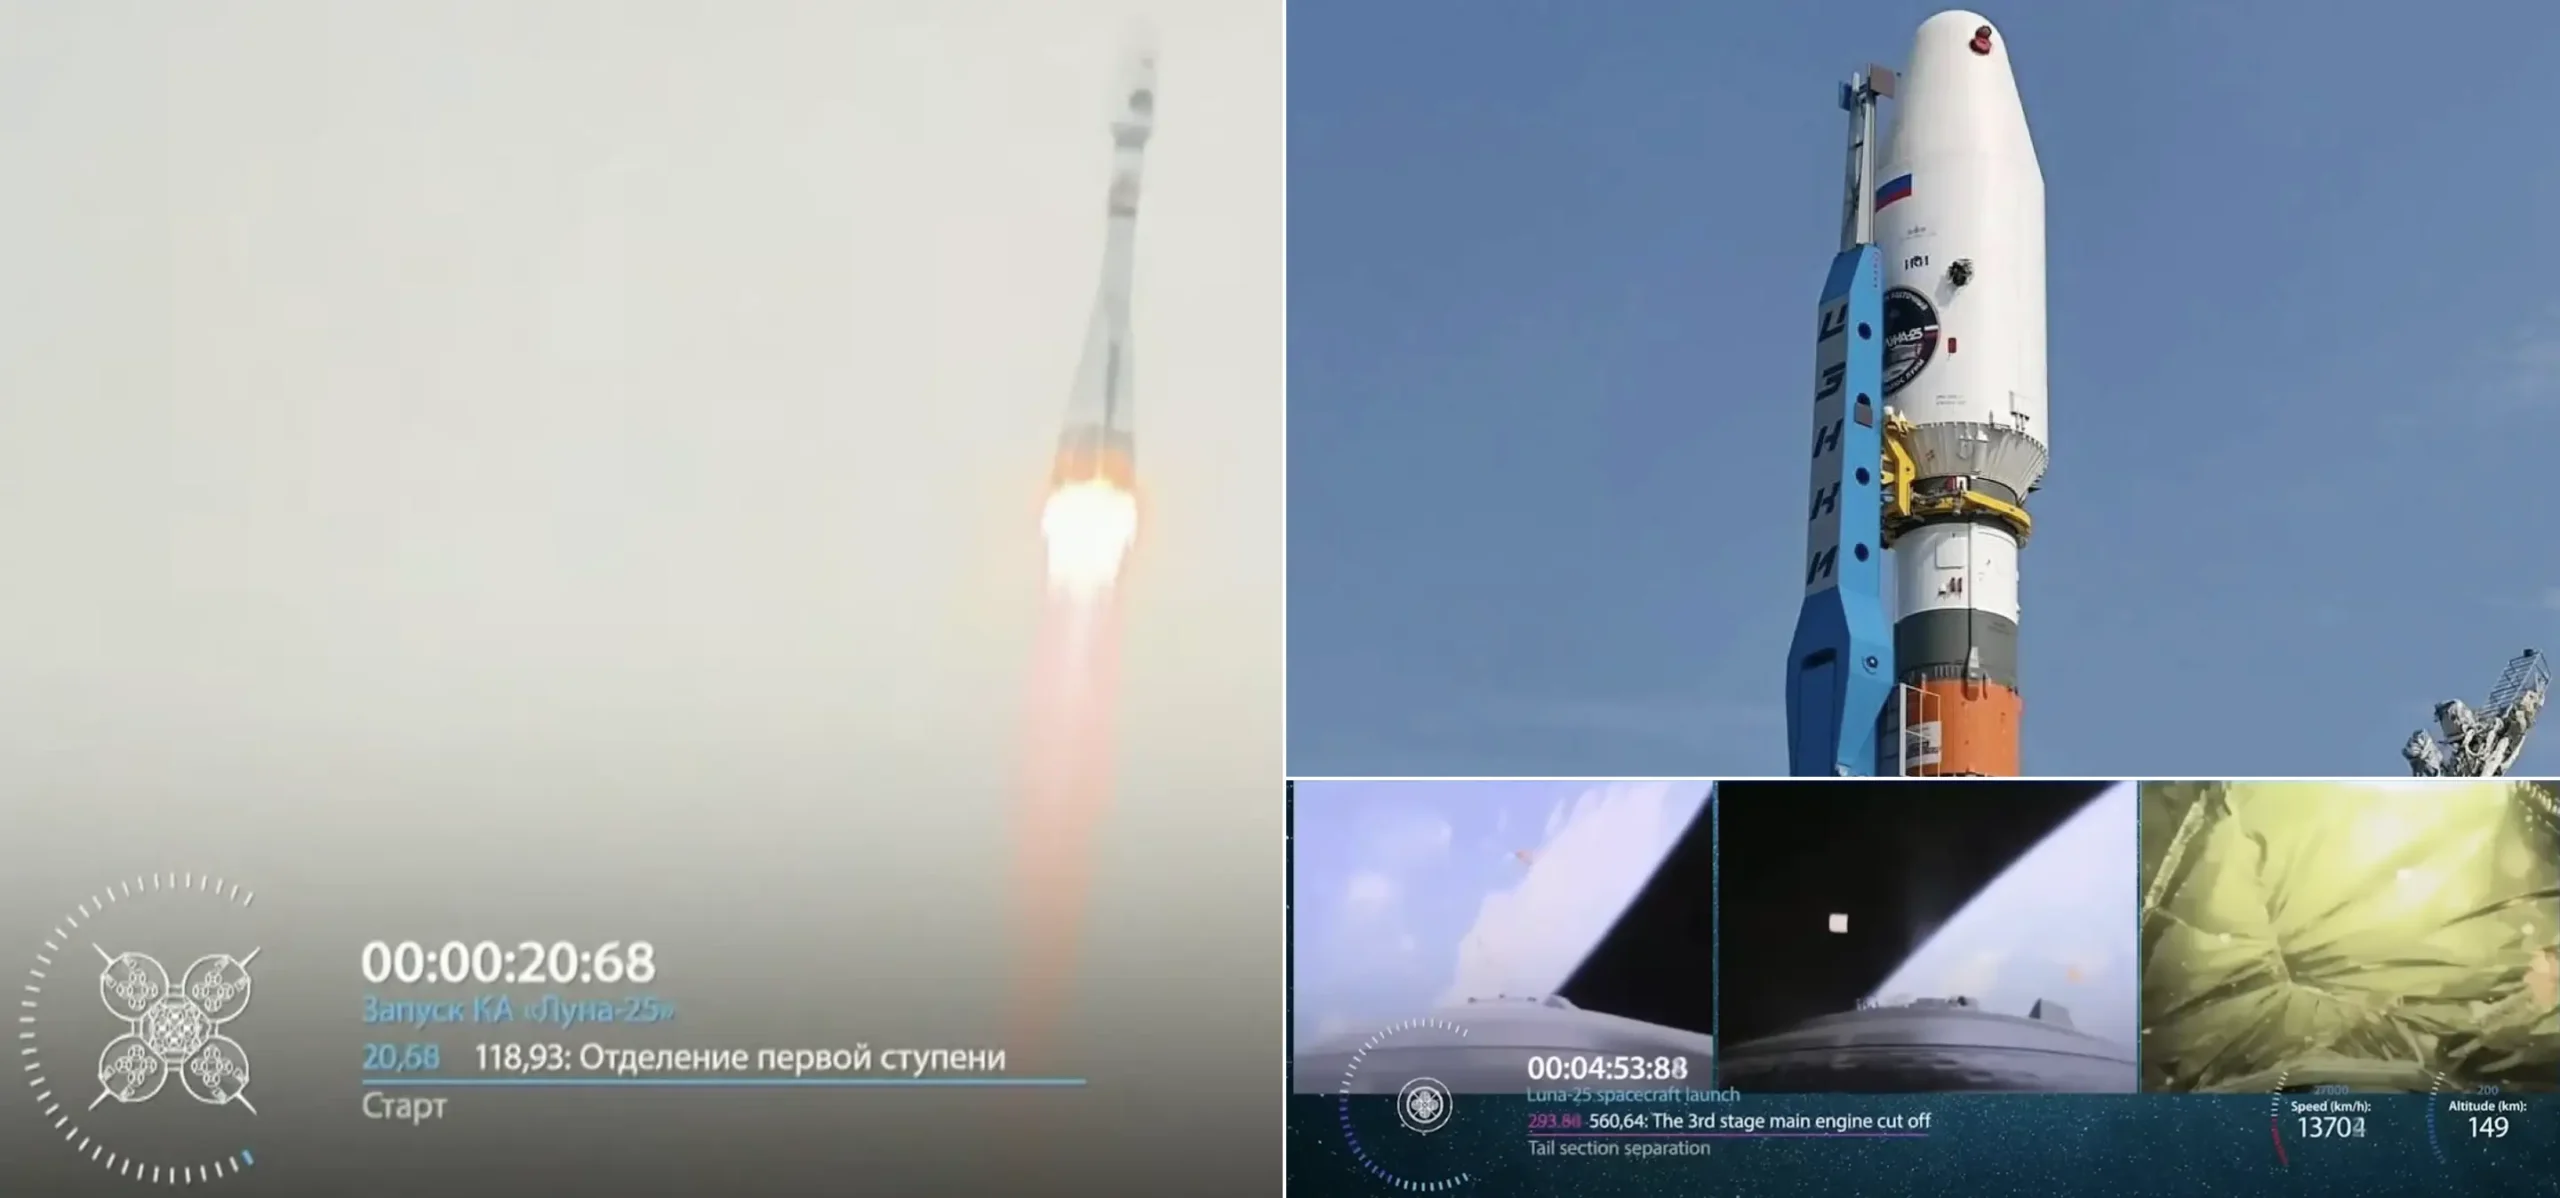 Russia's Luna 25 Mission Revives Lunar Exploration Momentum